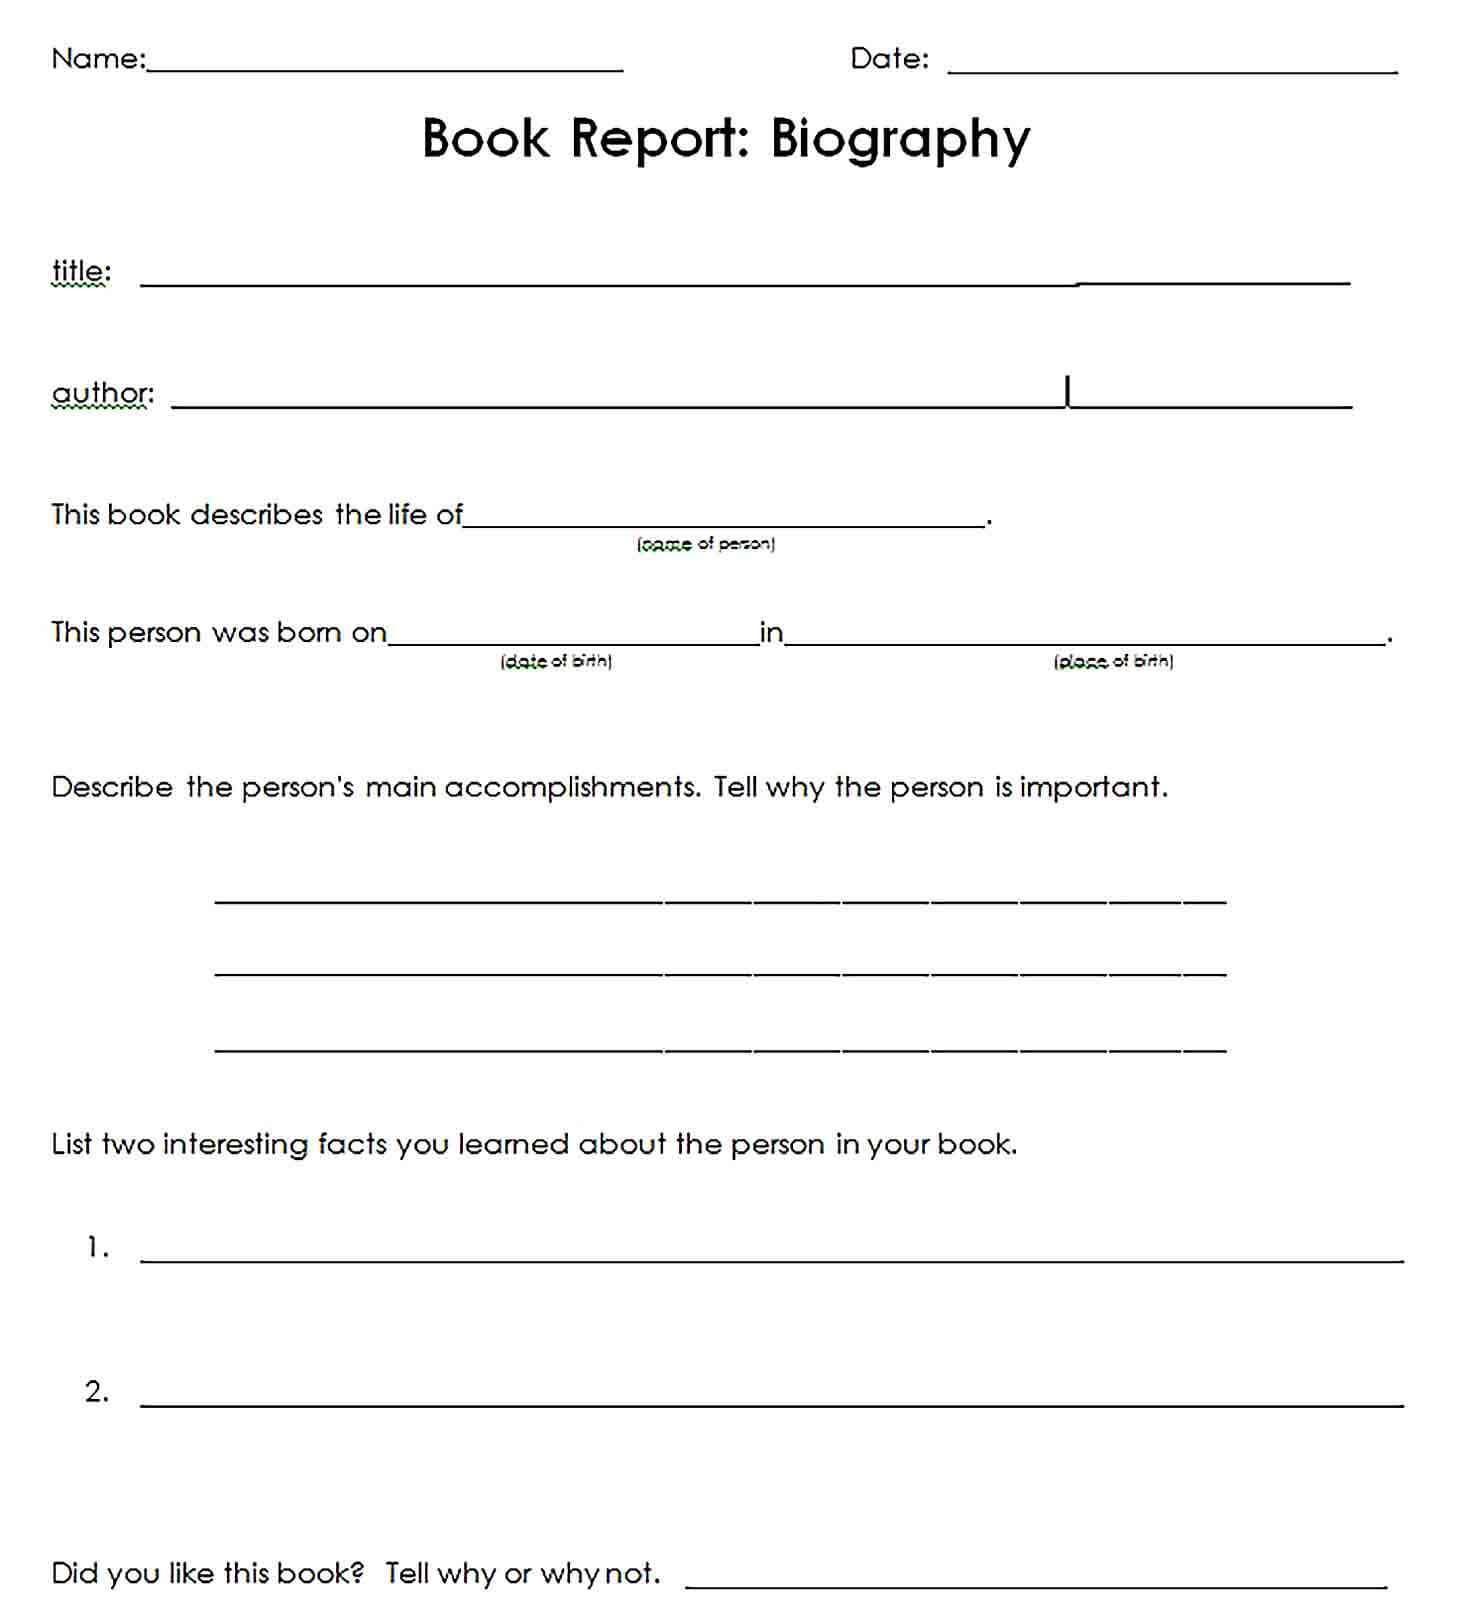 Sample Biography Book Report Format